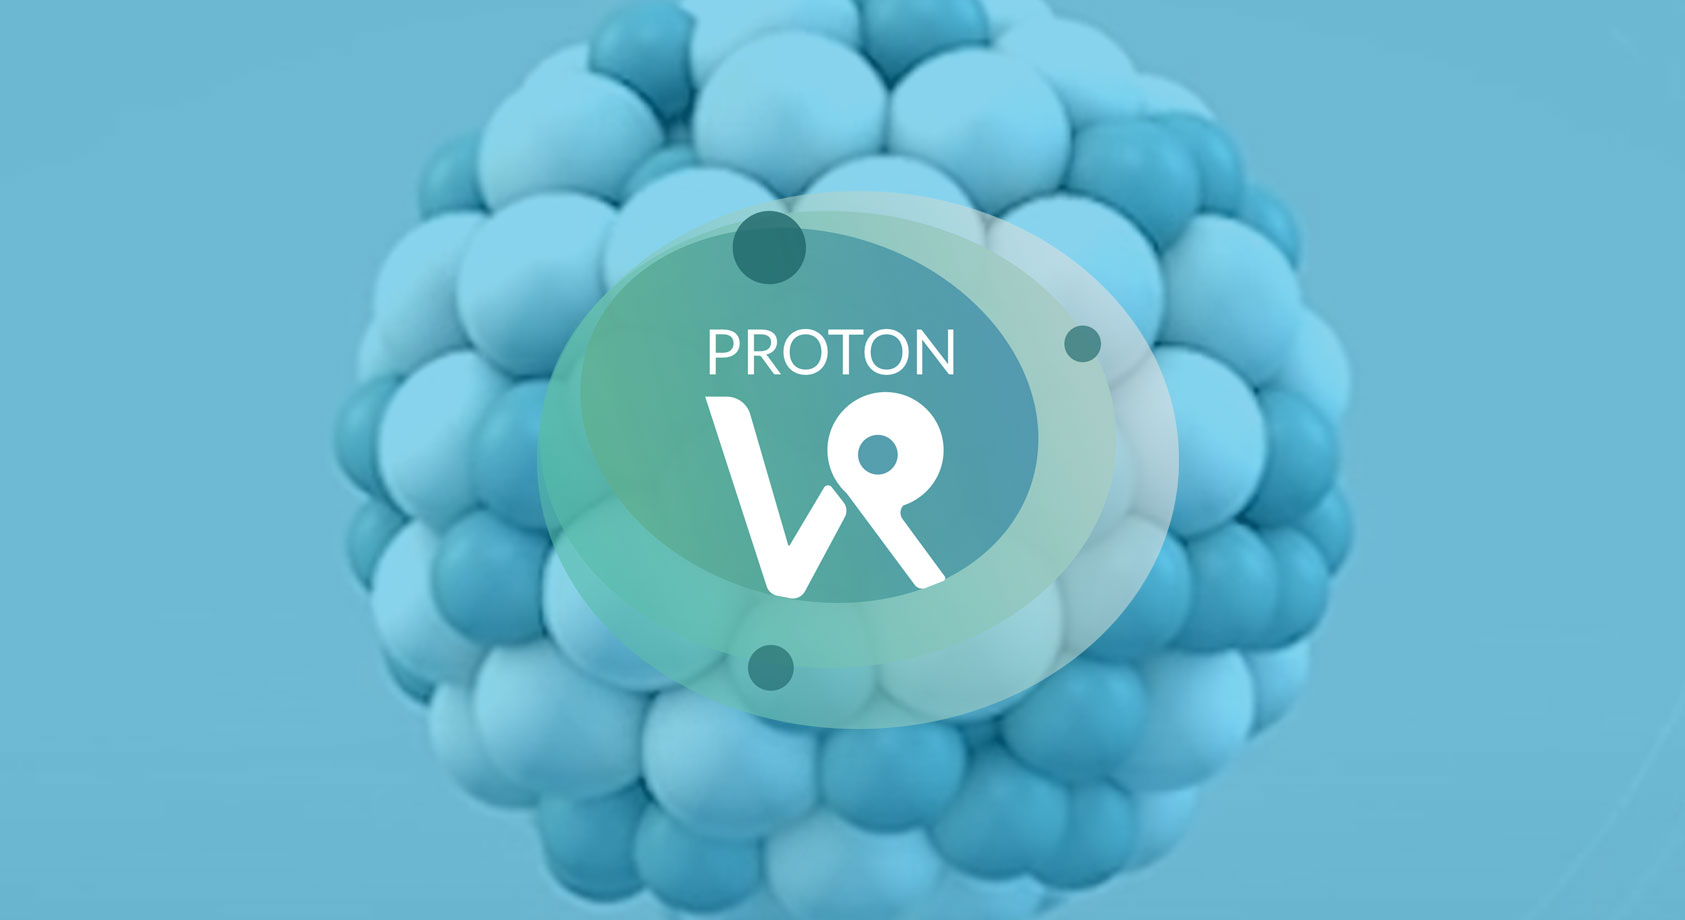 Proton VR